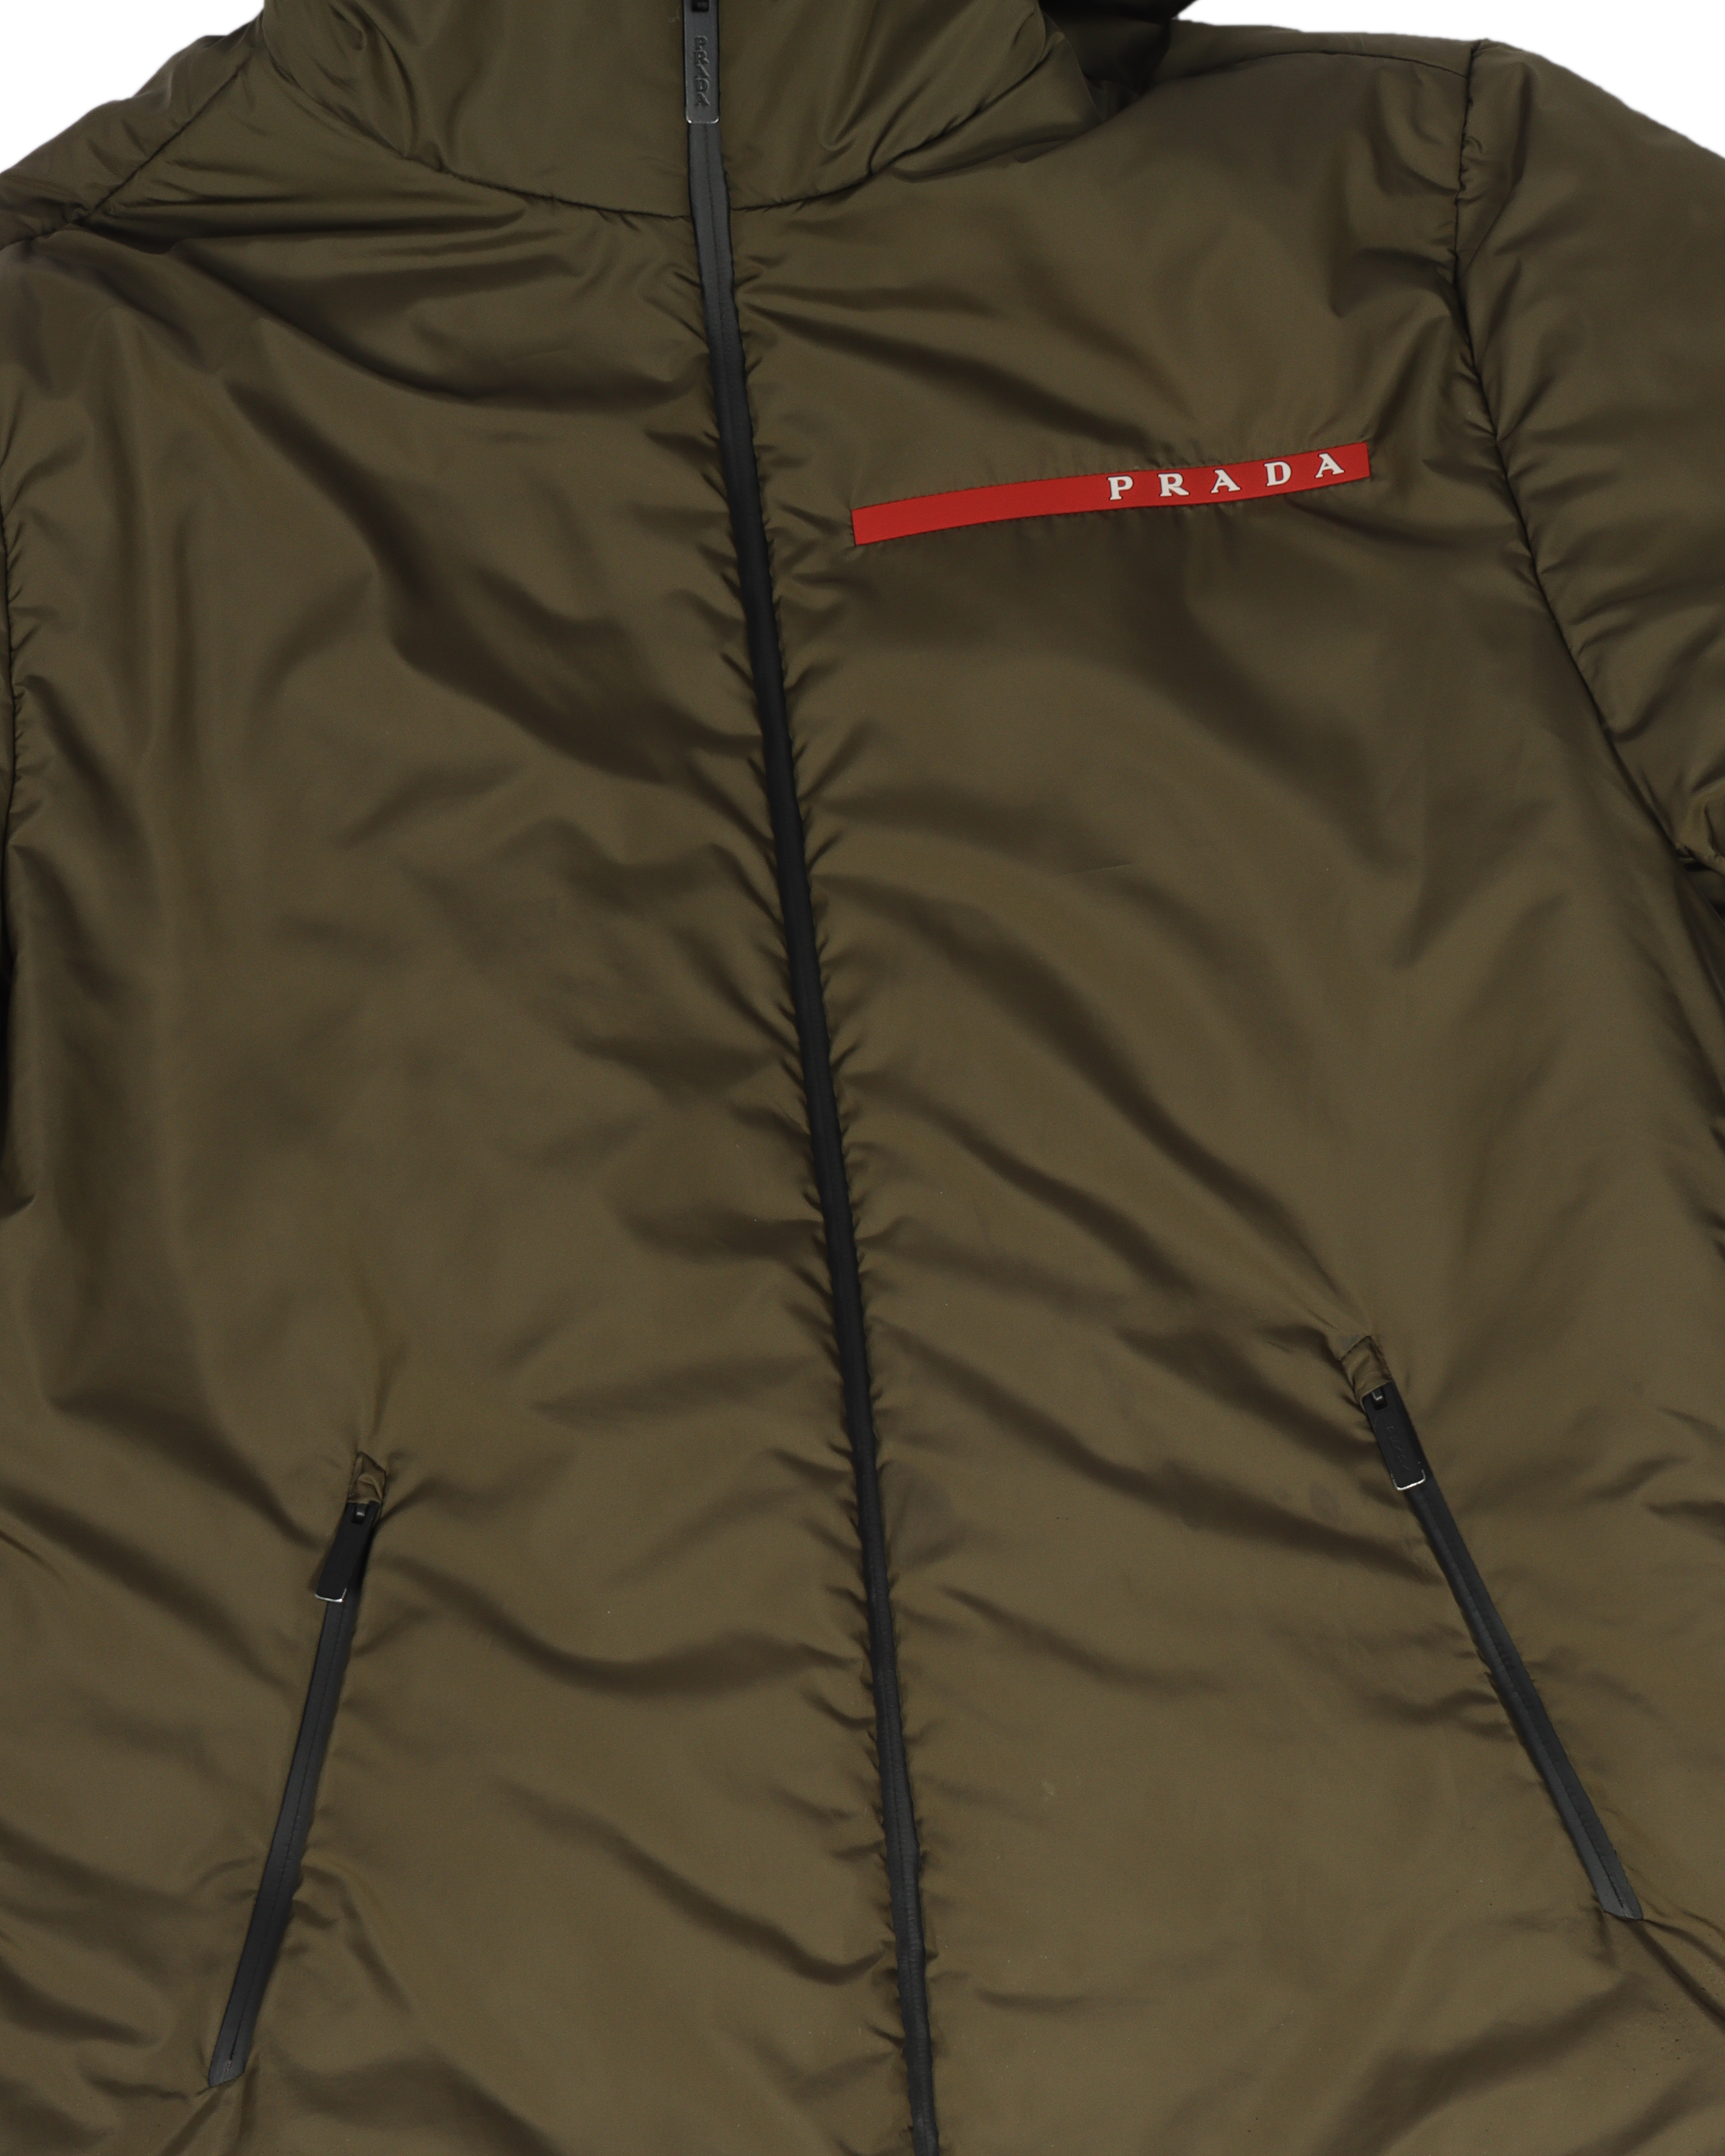 LR-MX008 Light Polyester Padded Jacket